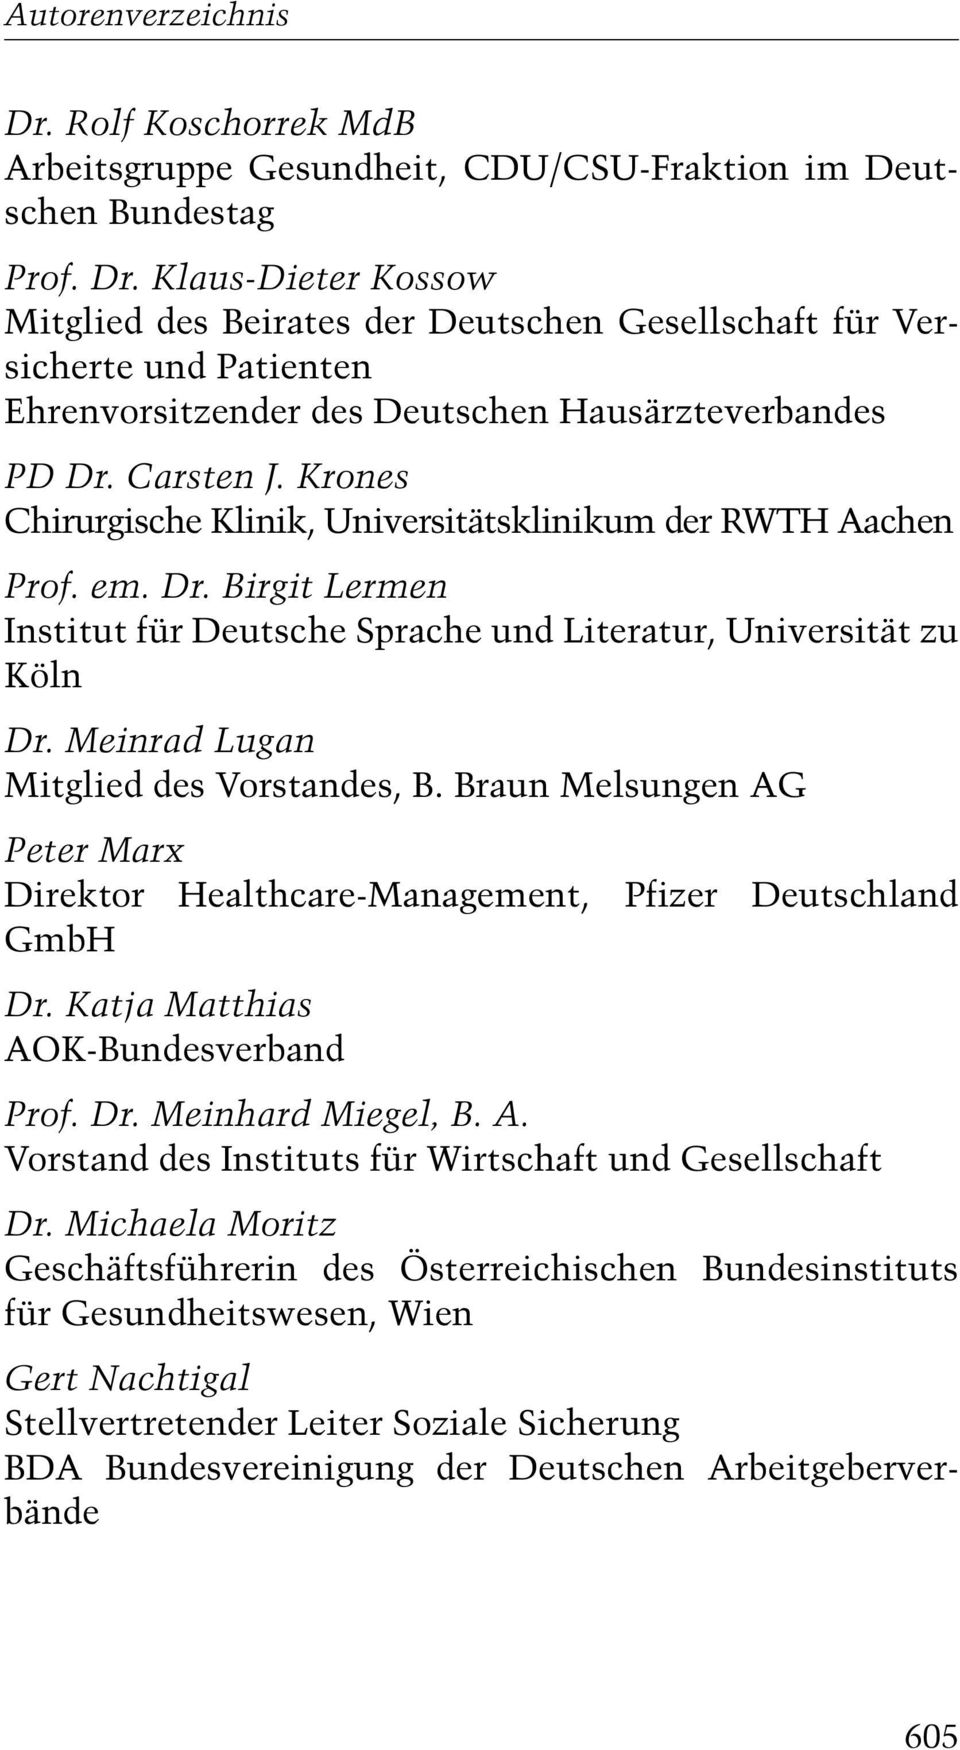 Carsten J. Krones Prof. em. Dr. Birgit Lermen Institut für Deutsche Sprache und Literatur, Universität zu Köln Dr. Meinrad Lugan Mitglied des Vorstandes, B.